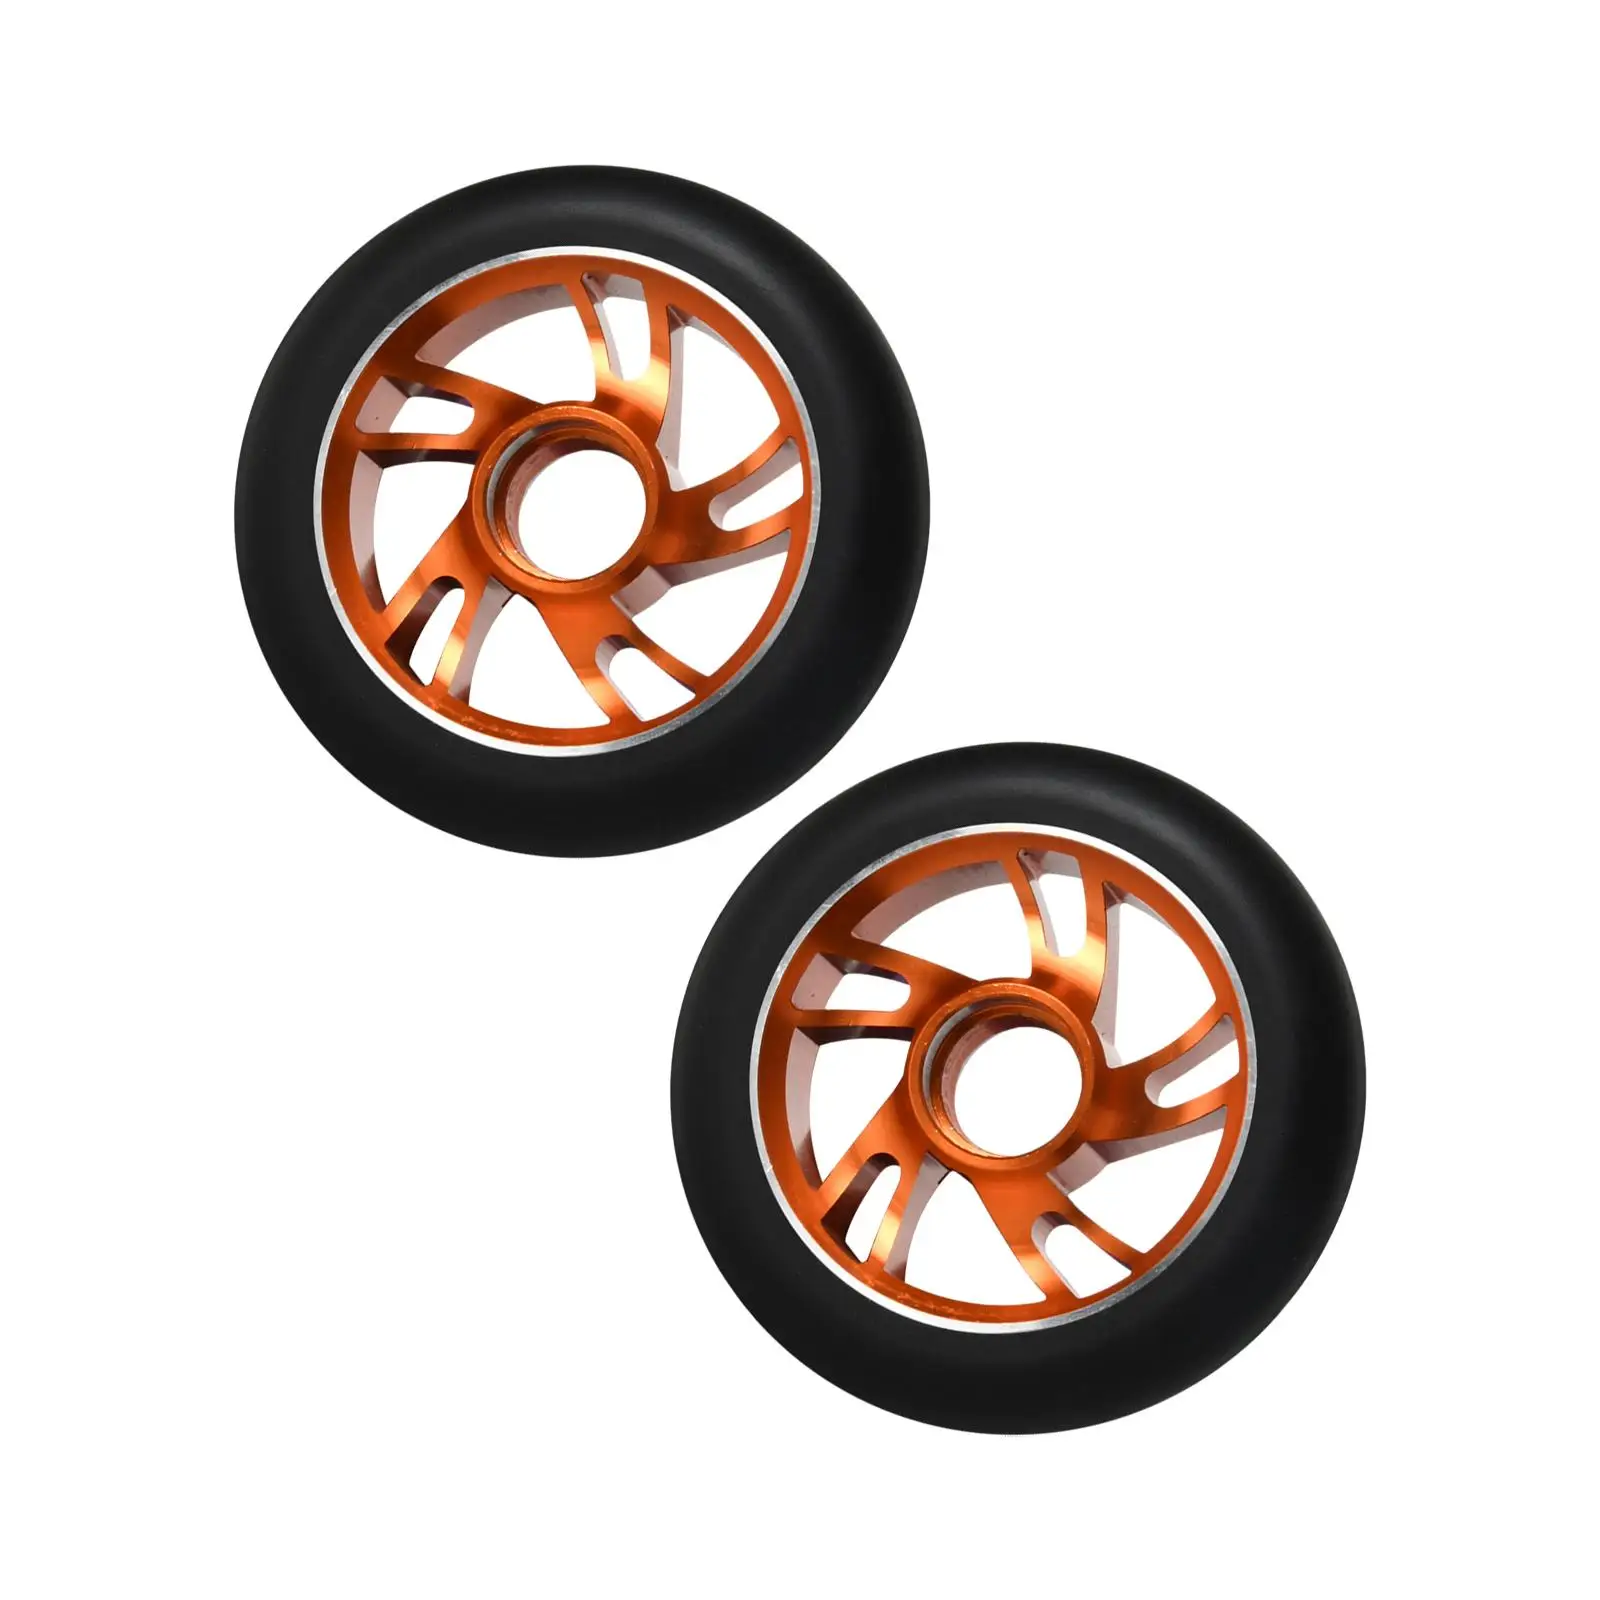 Piezas de repuesto para ruedas de Scooter, accesorios ligeros de aleación de aluminio, 2 piezas